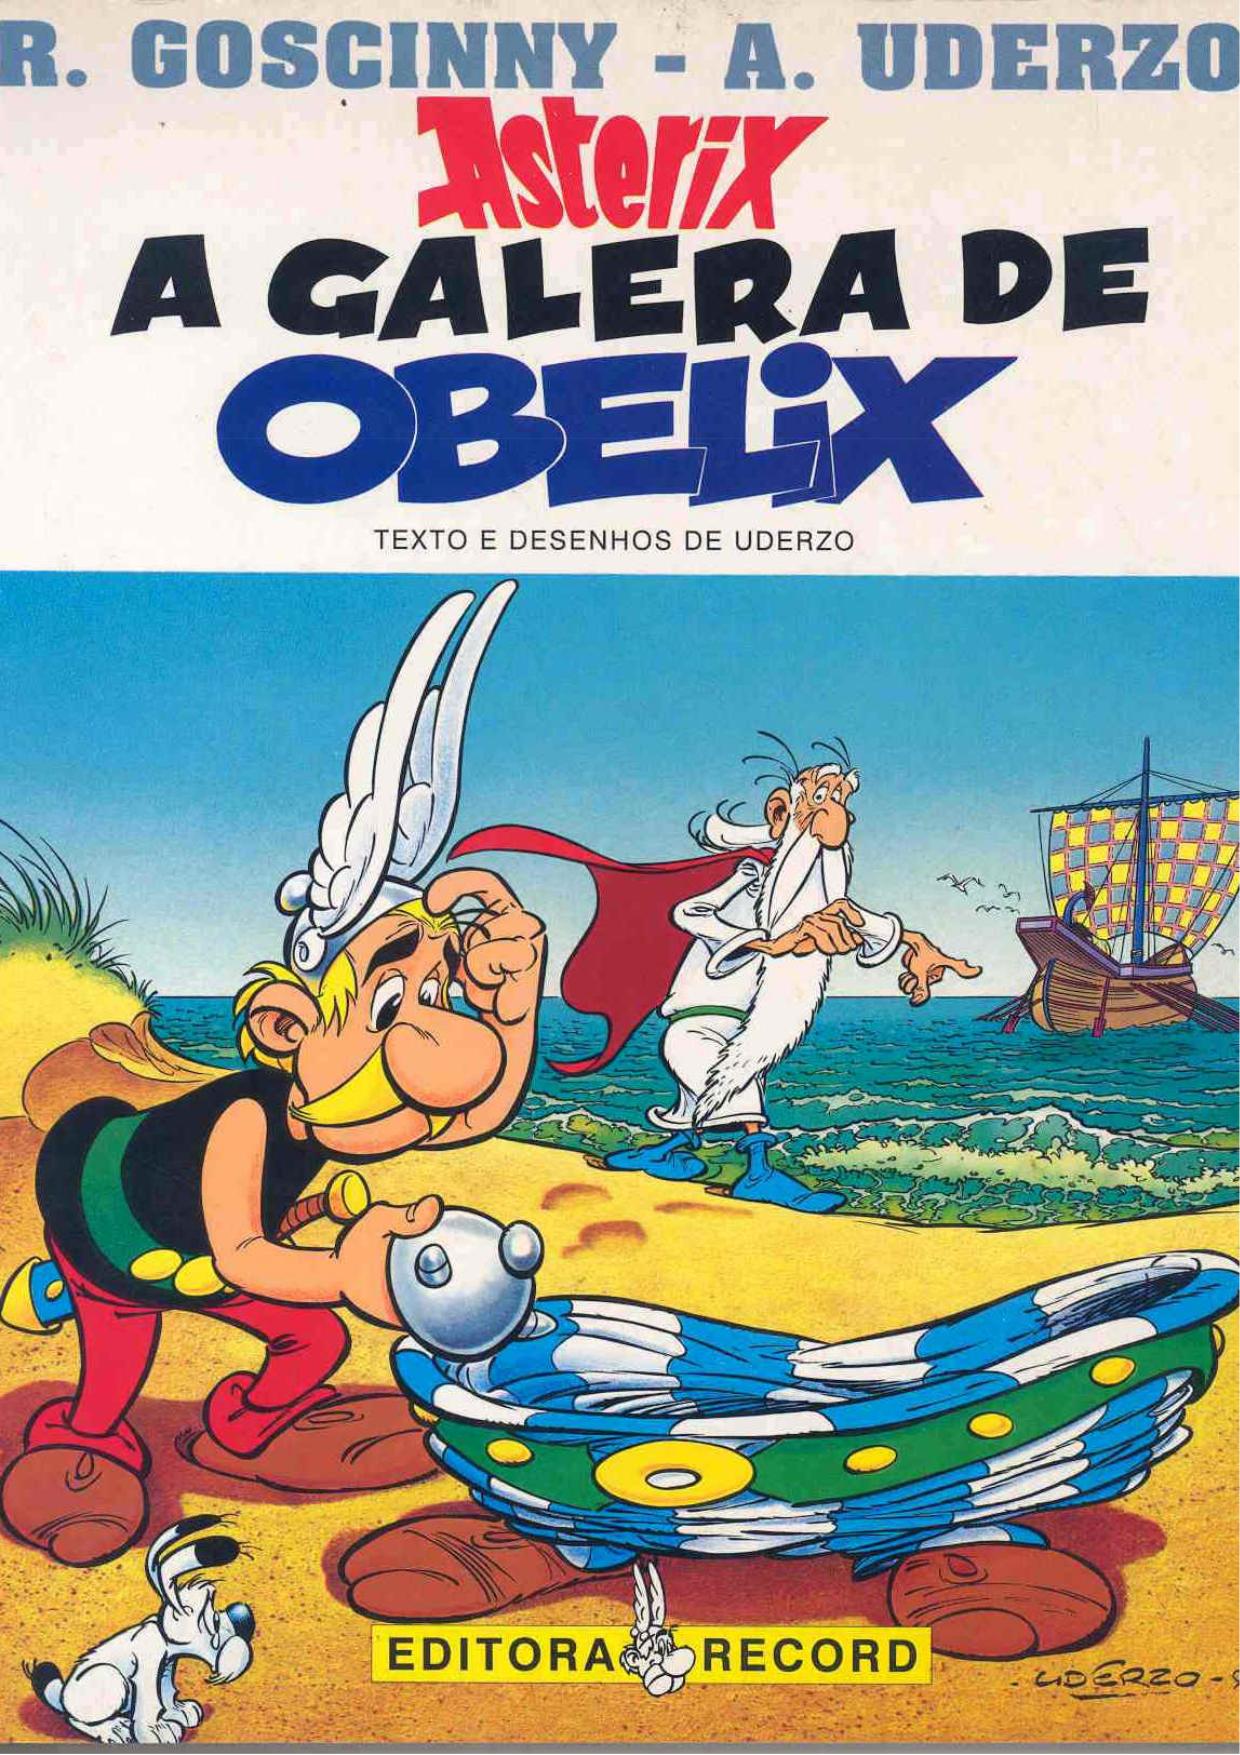 A galera de Obelix